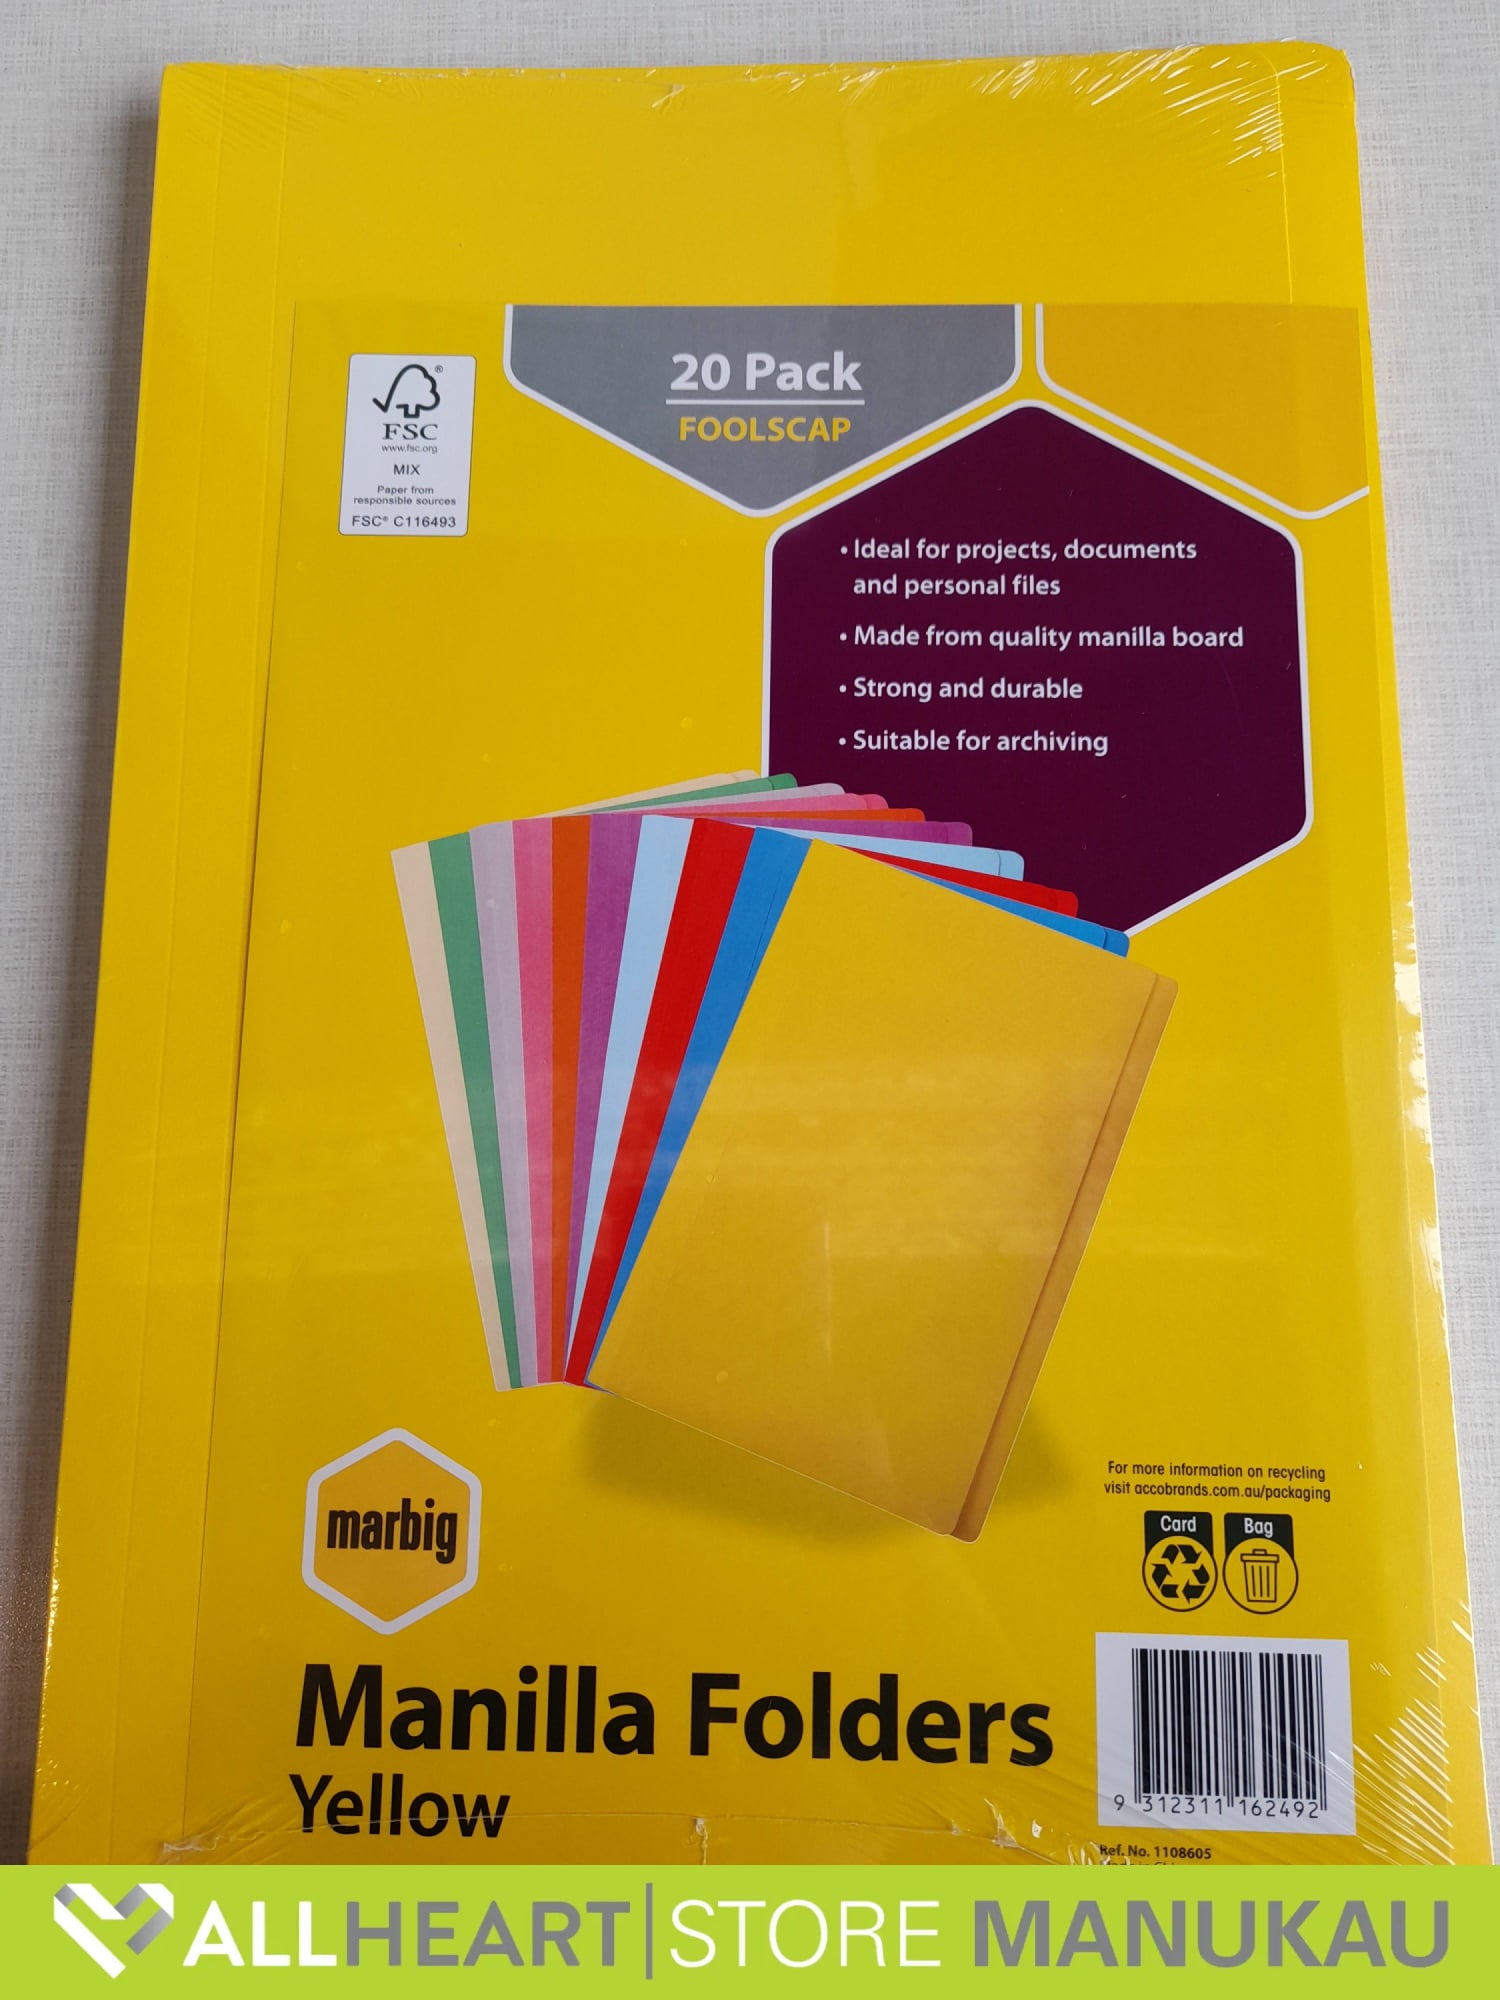 Manilla Folders - Yellow 20 Pack